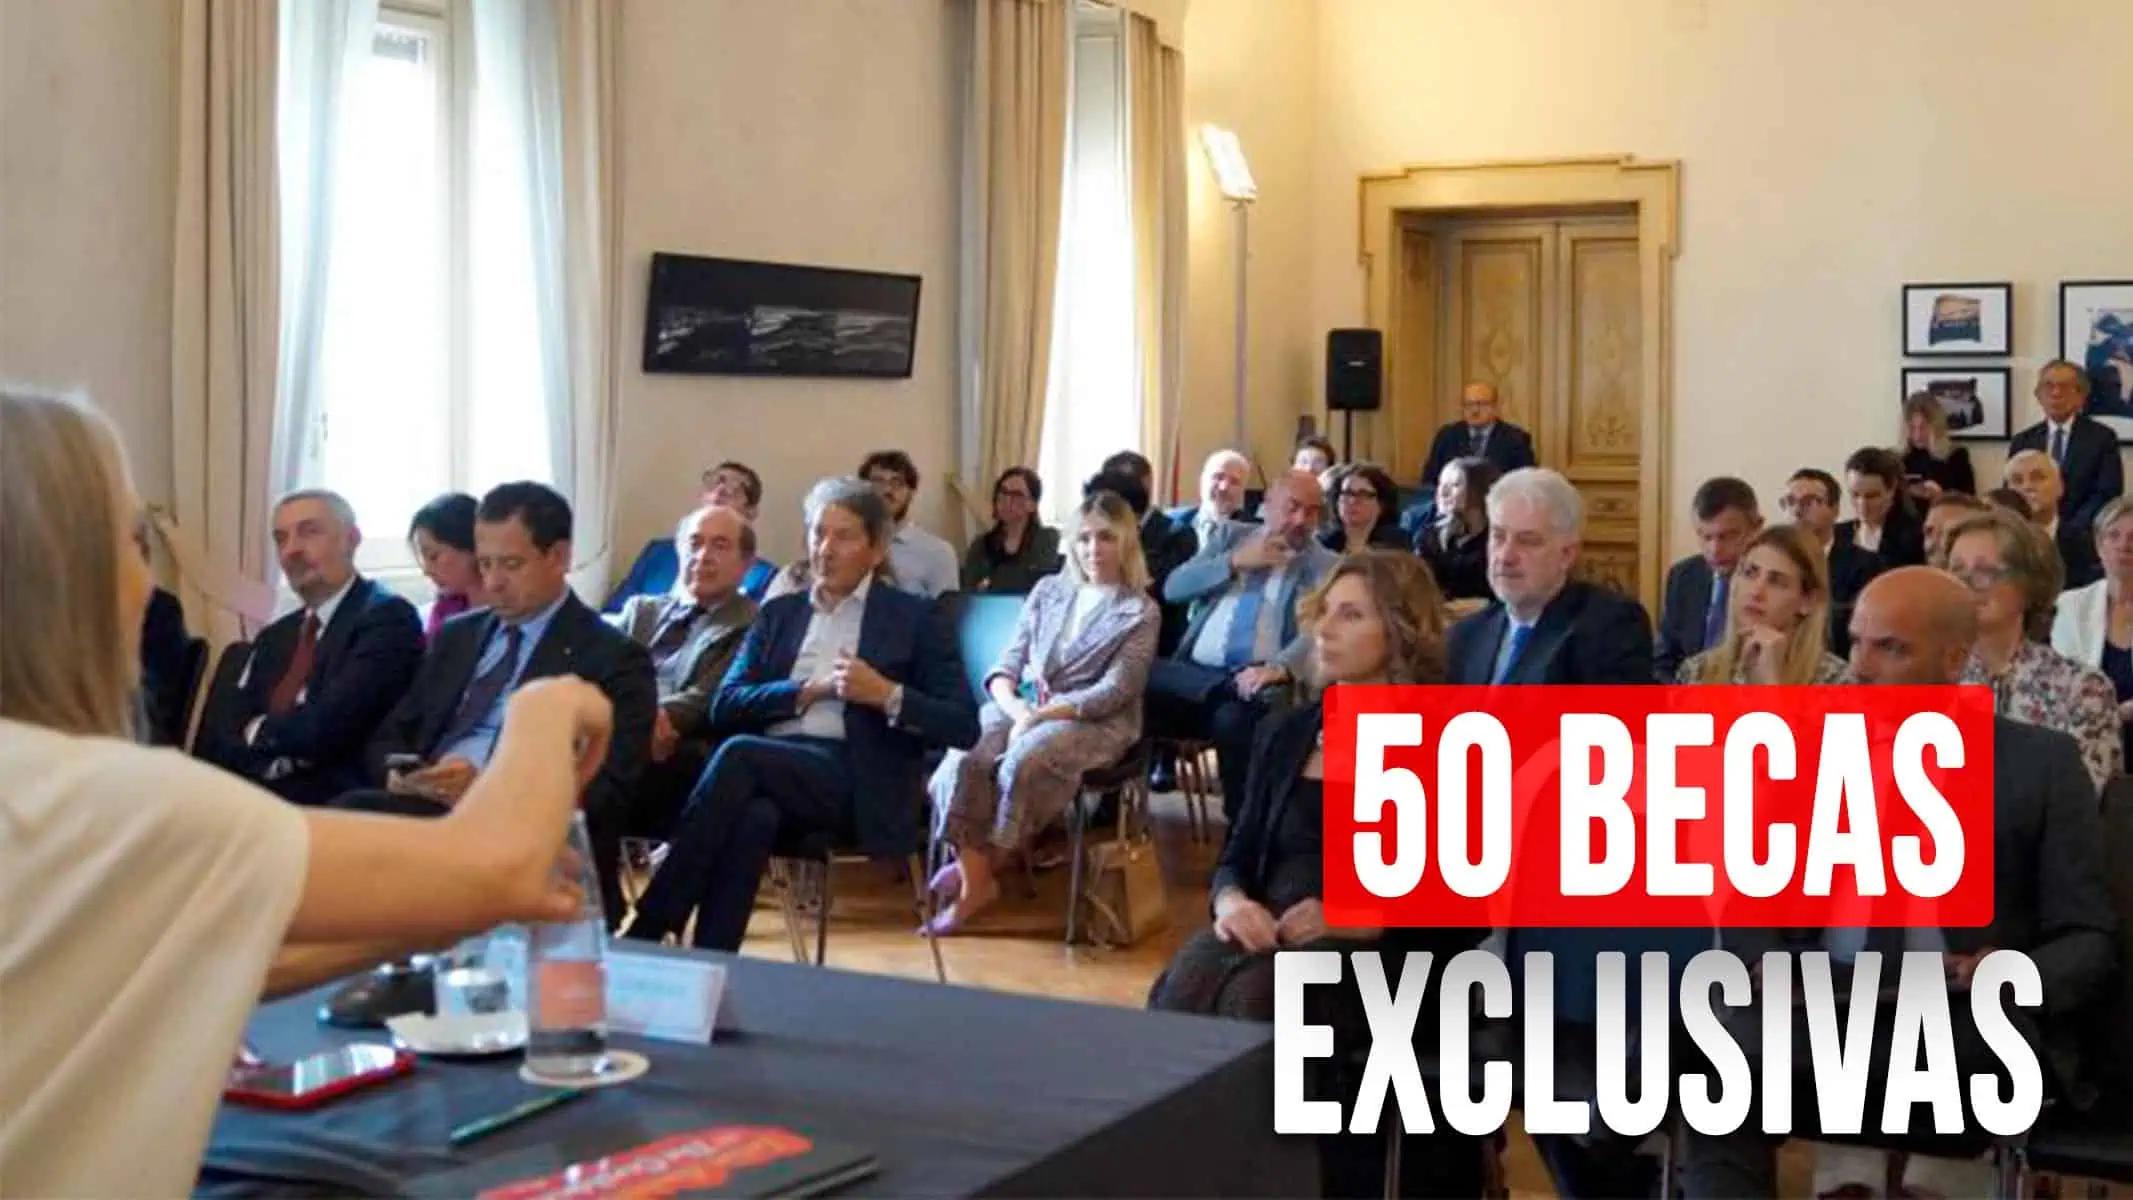 ¡Atención Emprendedores! Italia Ofrece 50 Becas Exclusivas para Pymes: Pueden Aplicar Cubanos